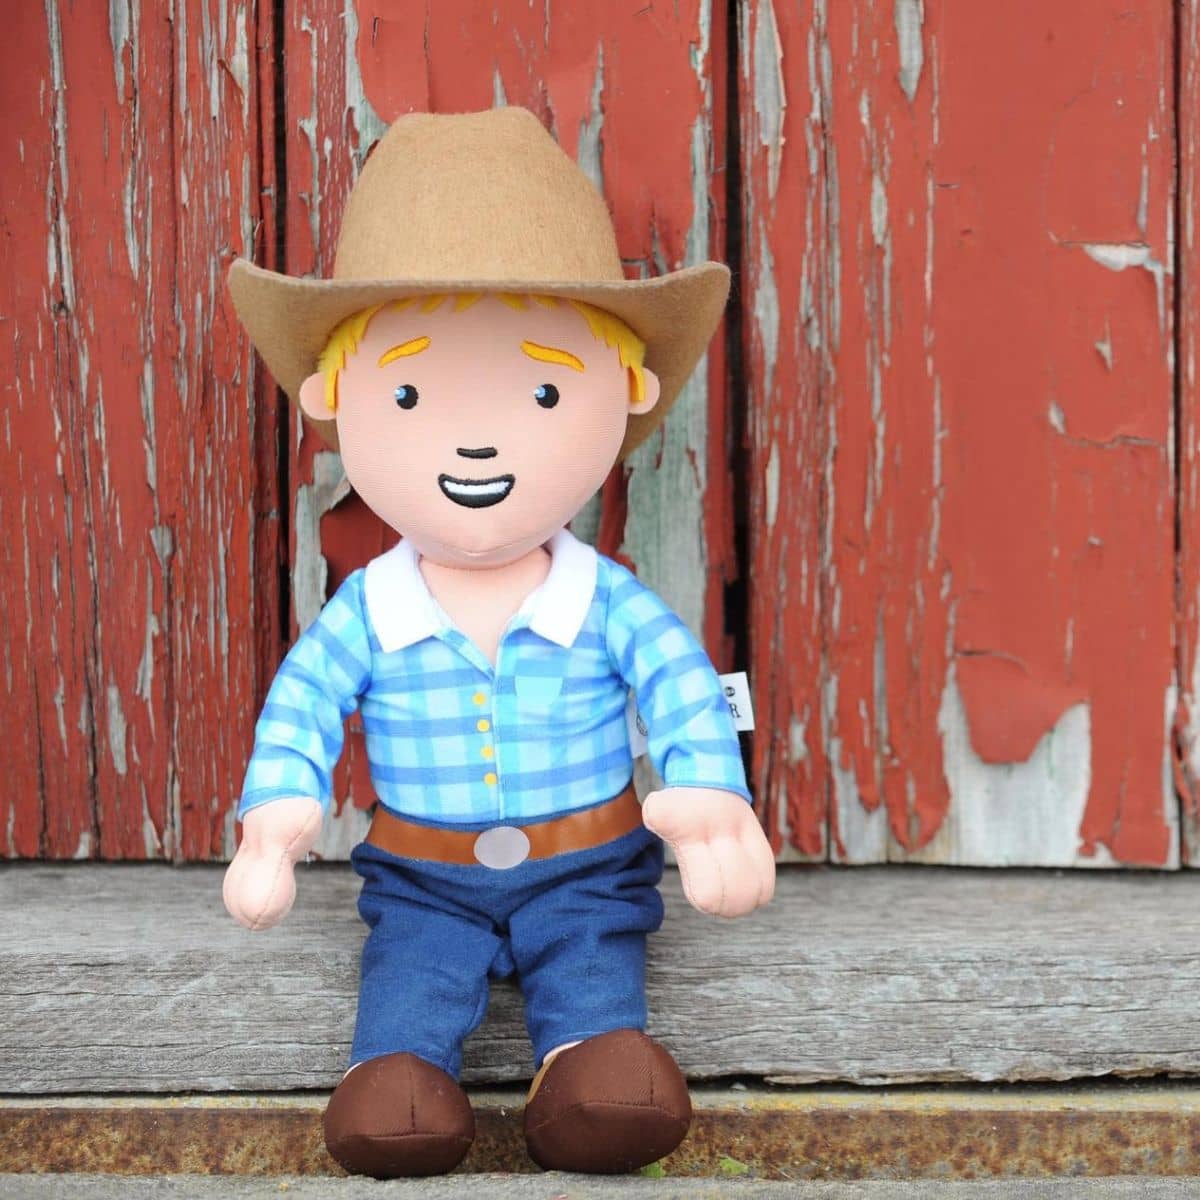 George the Farmer Cuddle Doll Toy - George the Farmer